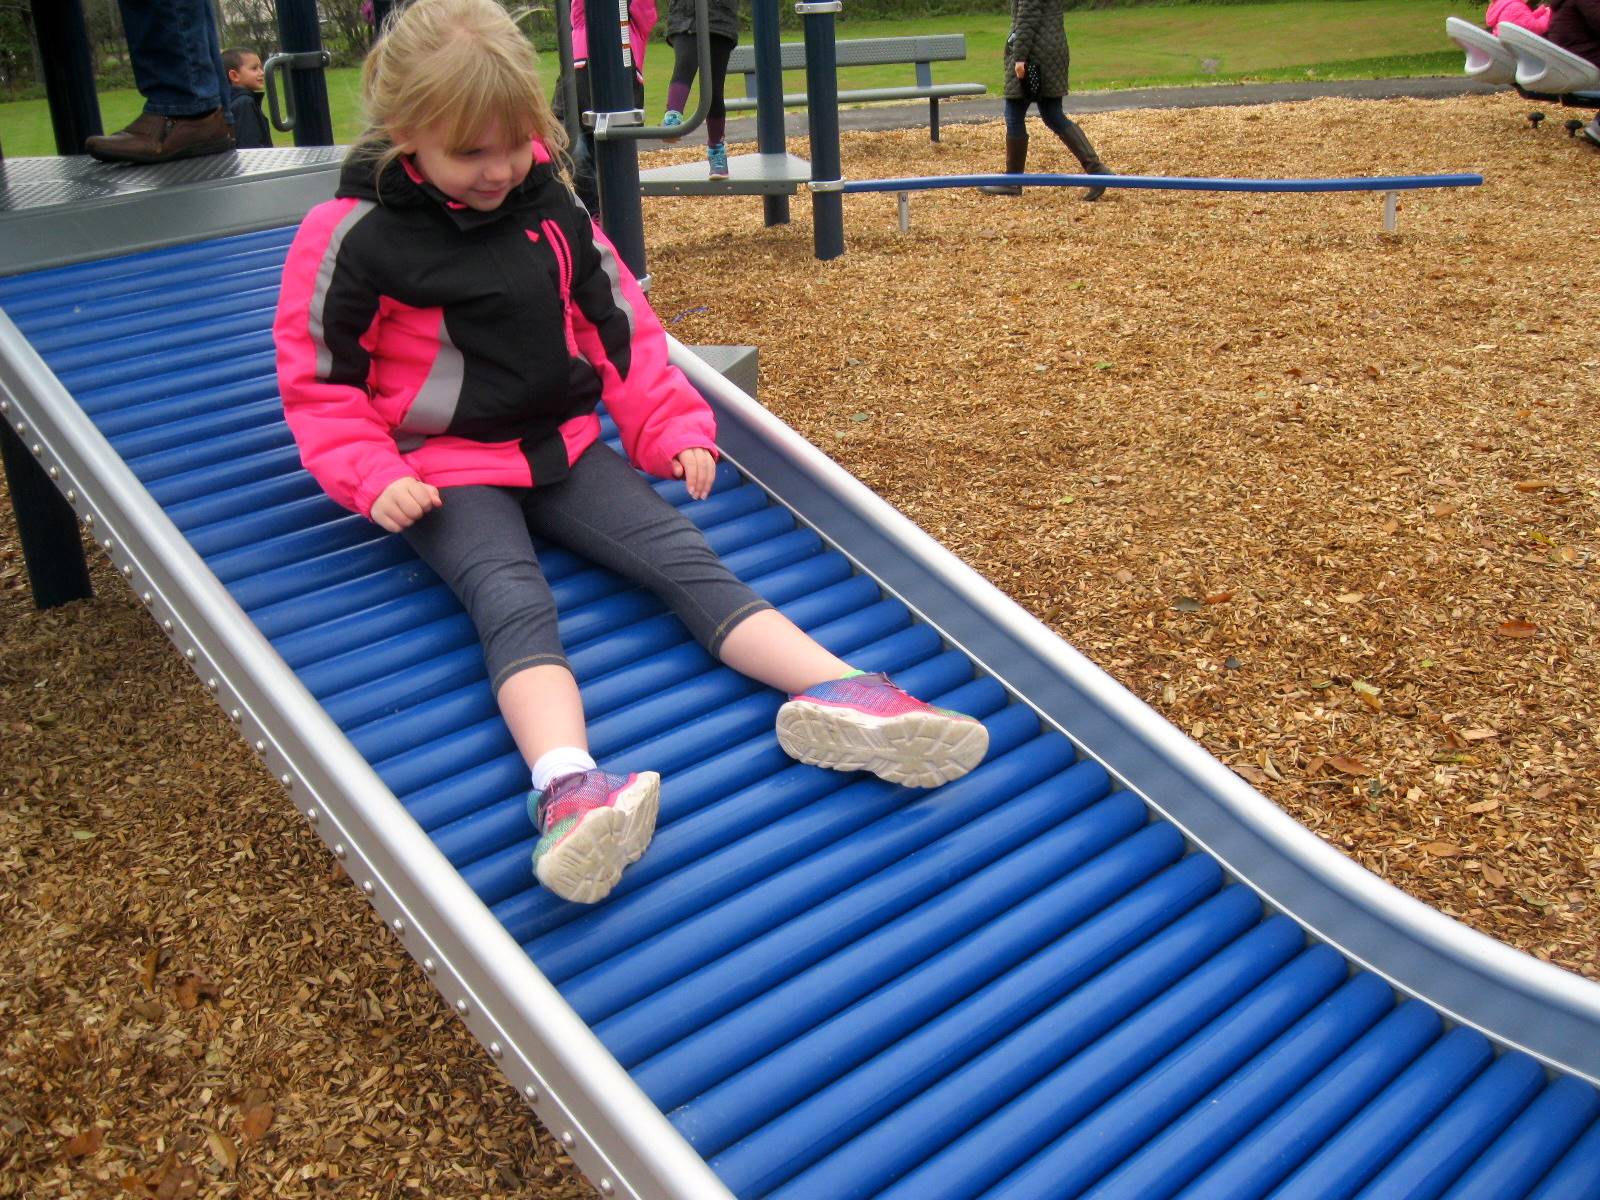 A child on a slide